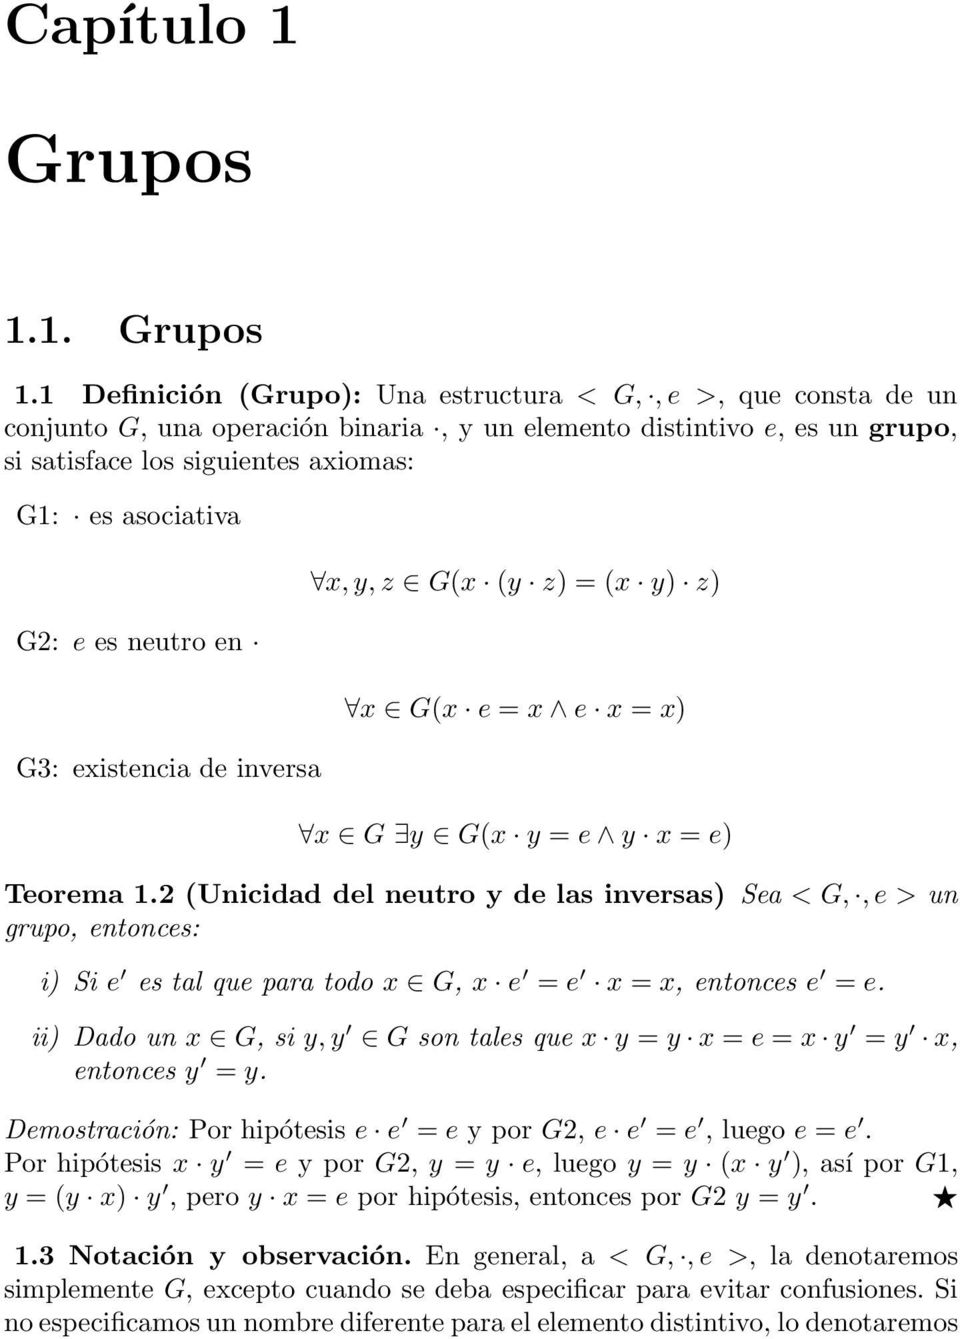 1 Definición (Grupo): Una estructura < G,, e >, que consta de un conjunto G, una operación binaria, y un elemento distintivo e, es un grupo, si satisface los siguientes axiomas: G1: es asociativa G2: